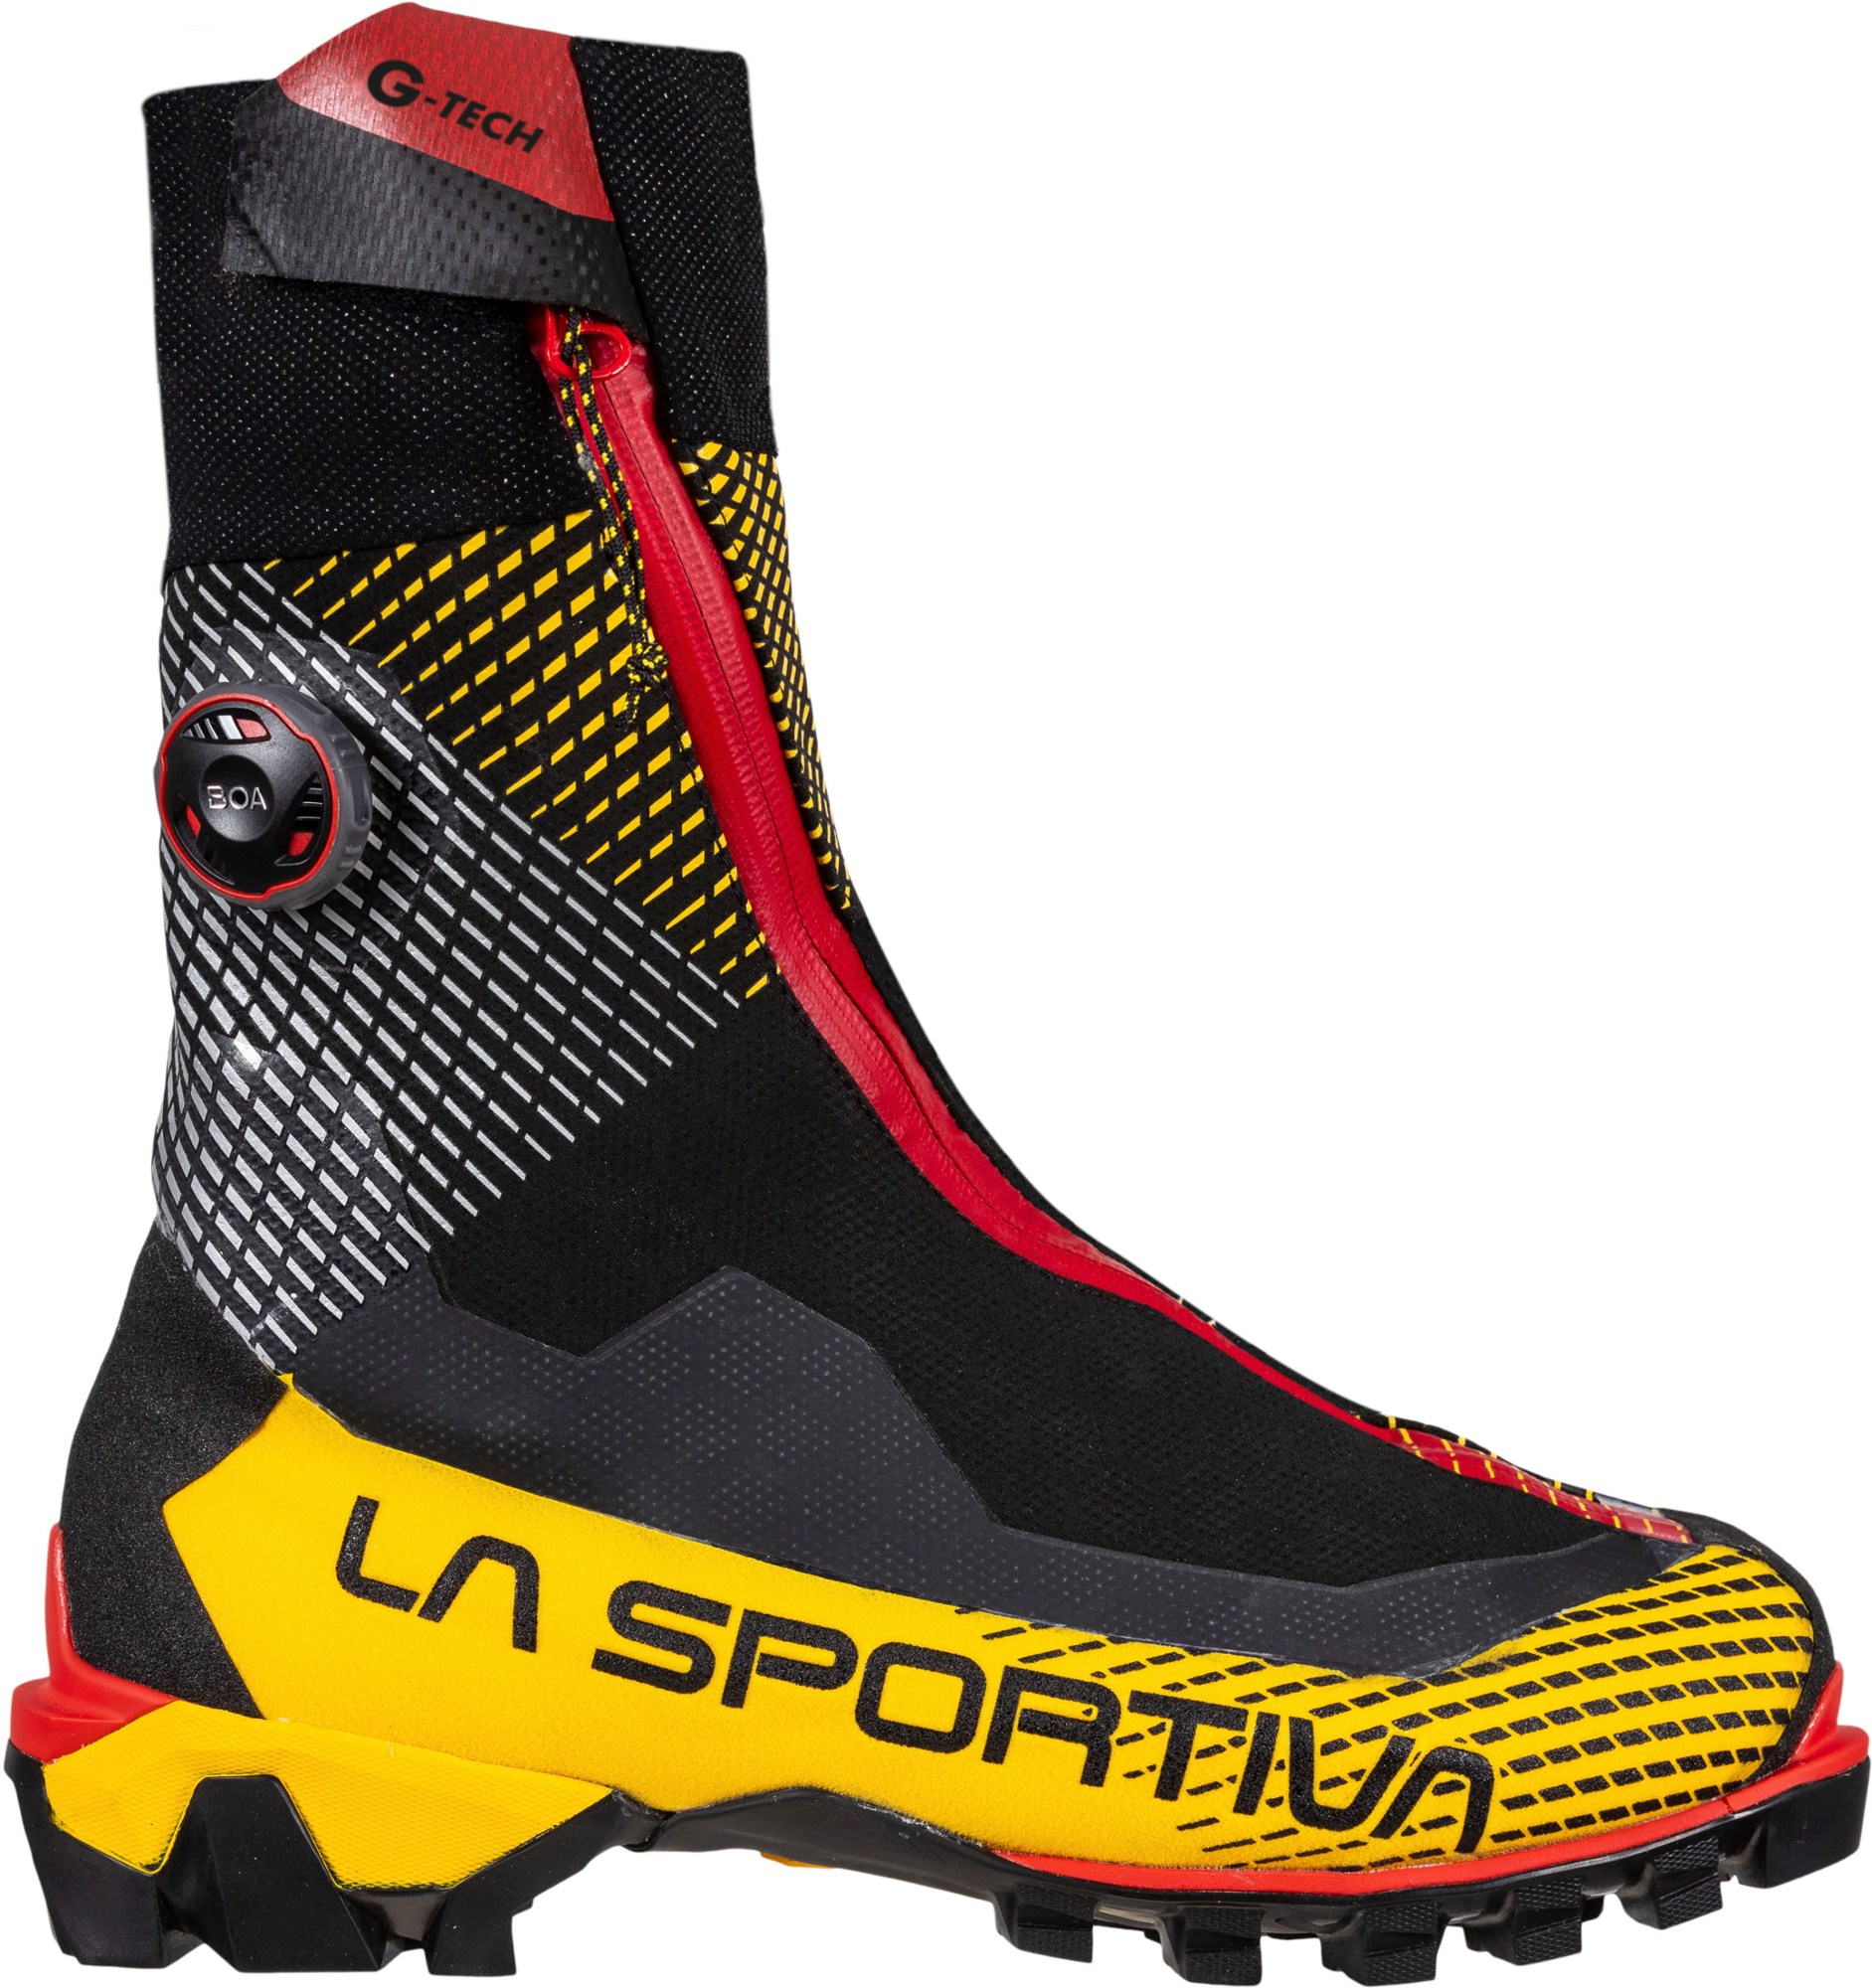 Альпинистские ботинки G-Tech — мужские La Sportiva, черный